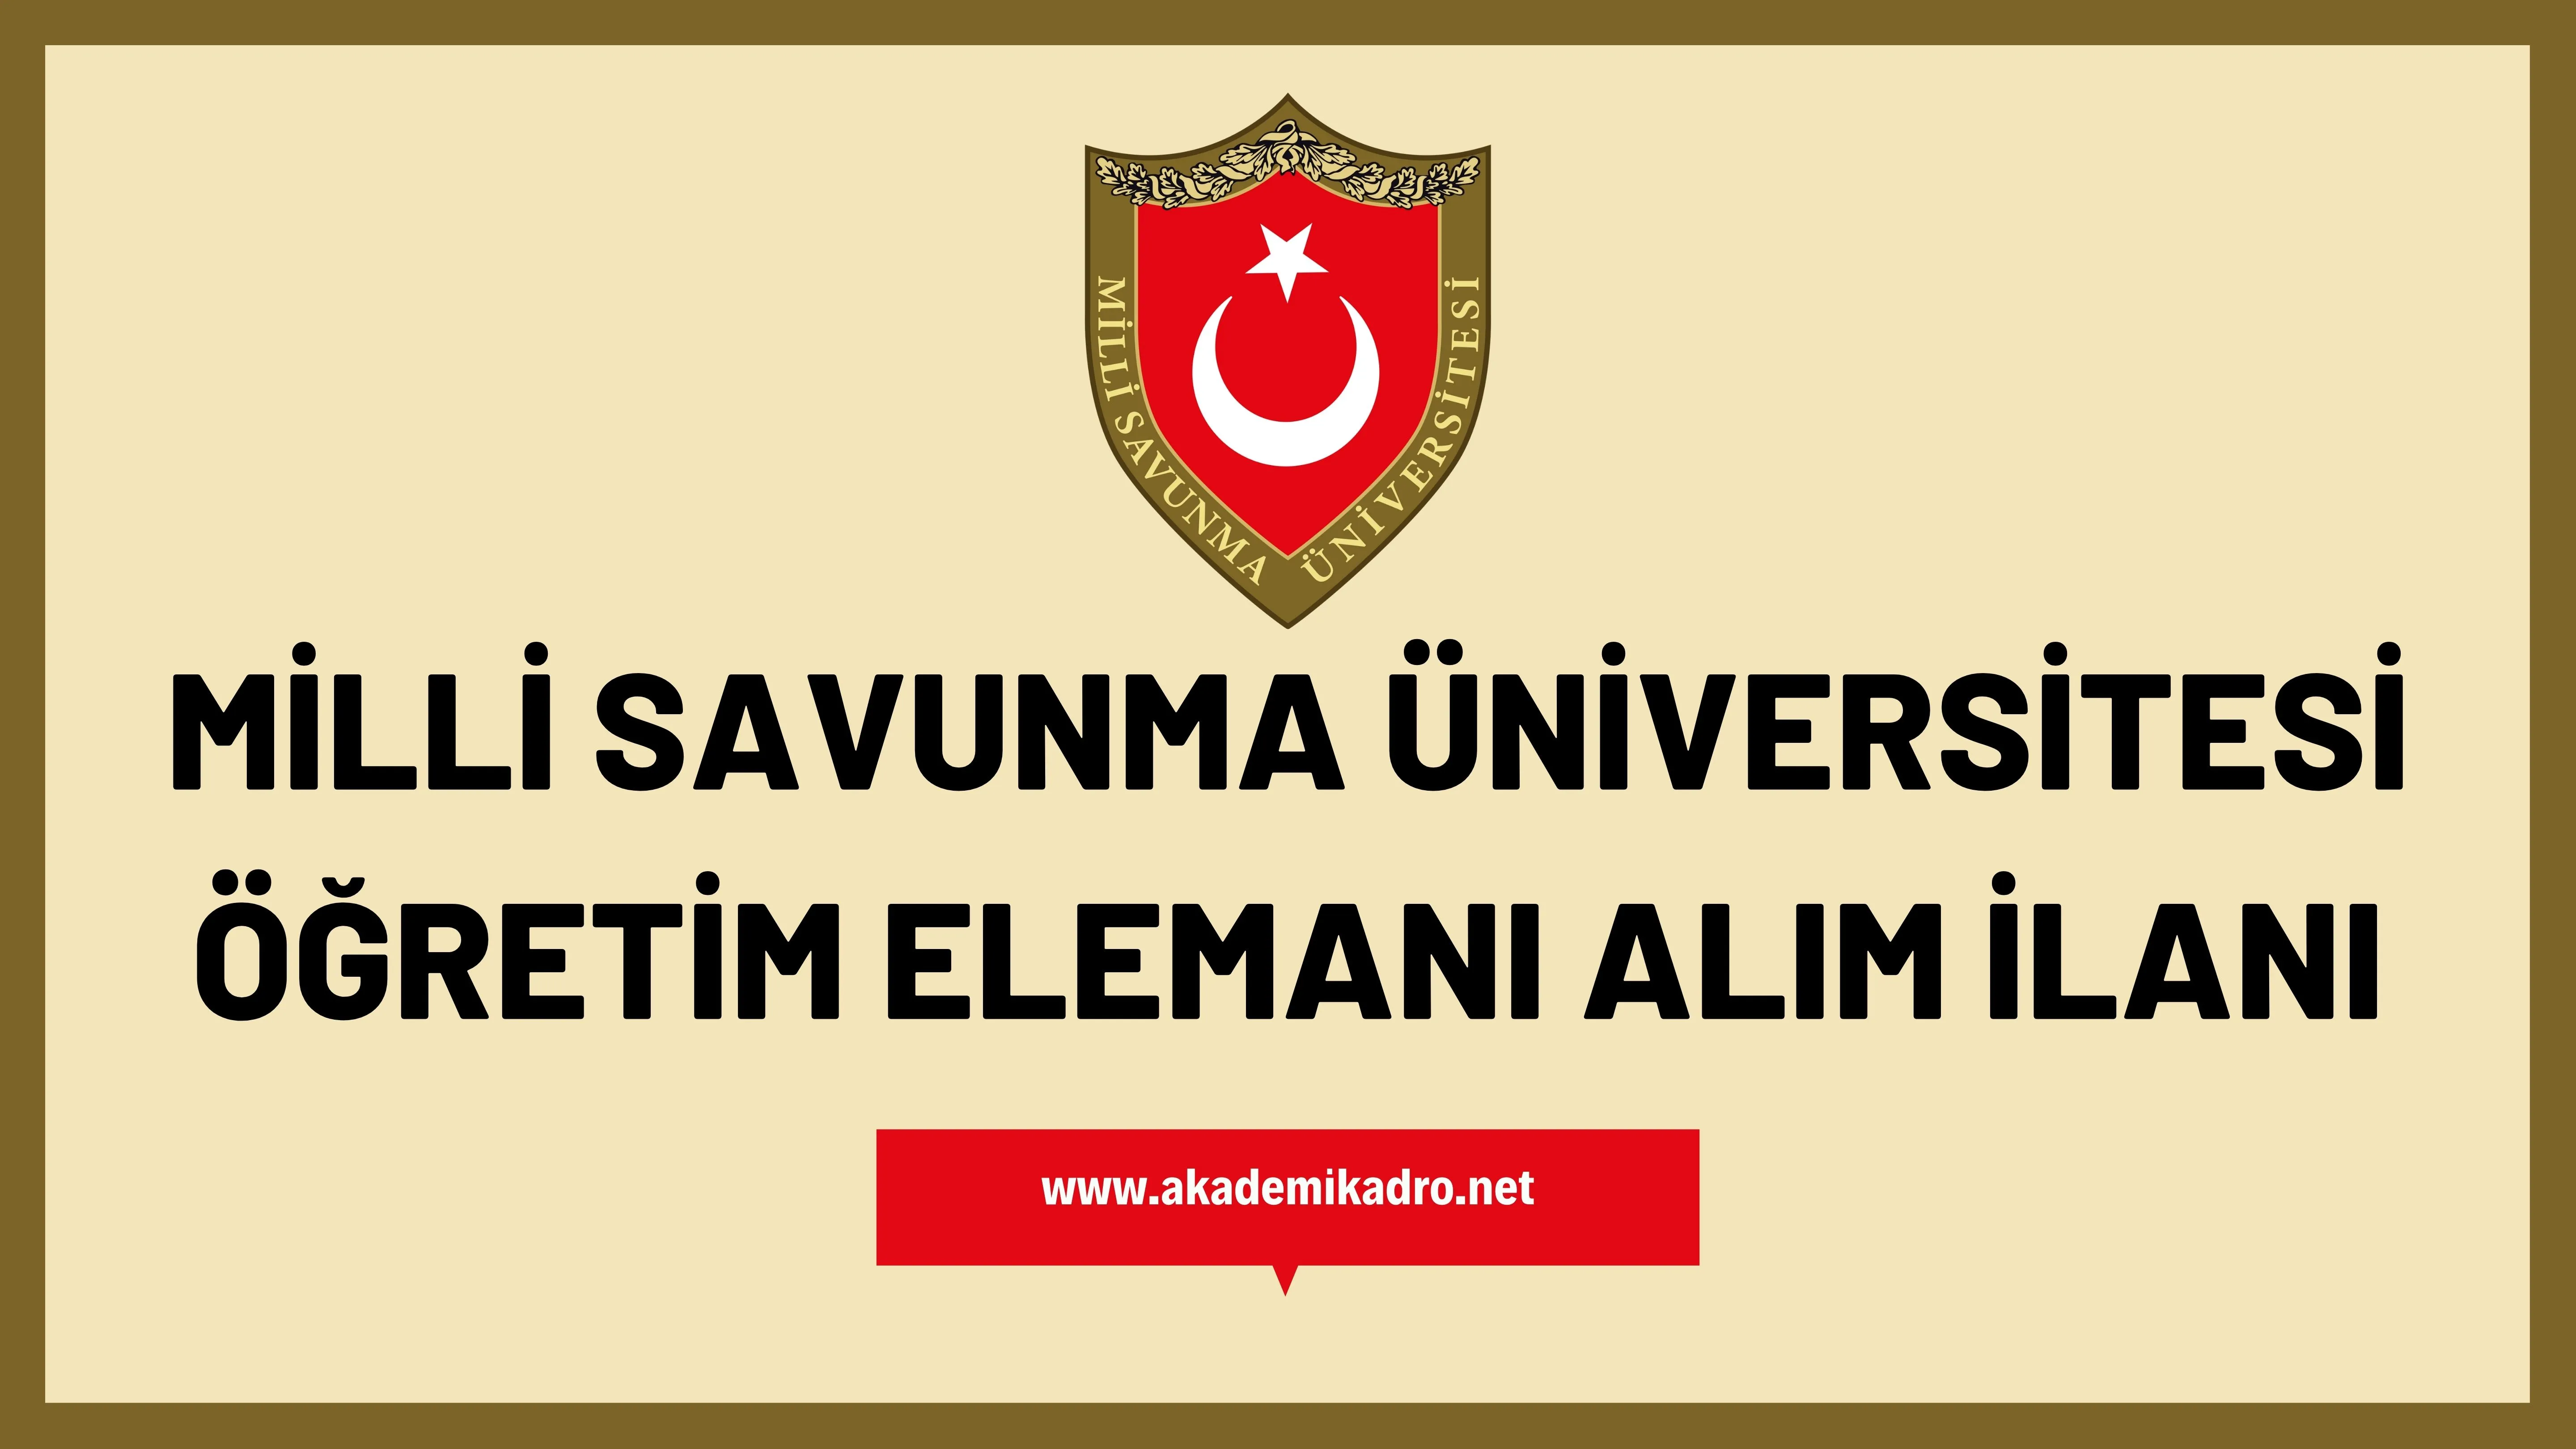 Milli Savunma Üniversitesi 16 Öğretim görevlisi ve 5 öğretim üyesi alacak.